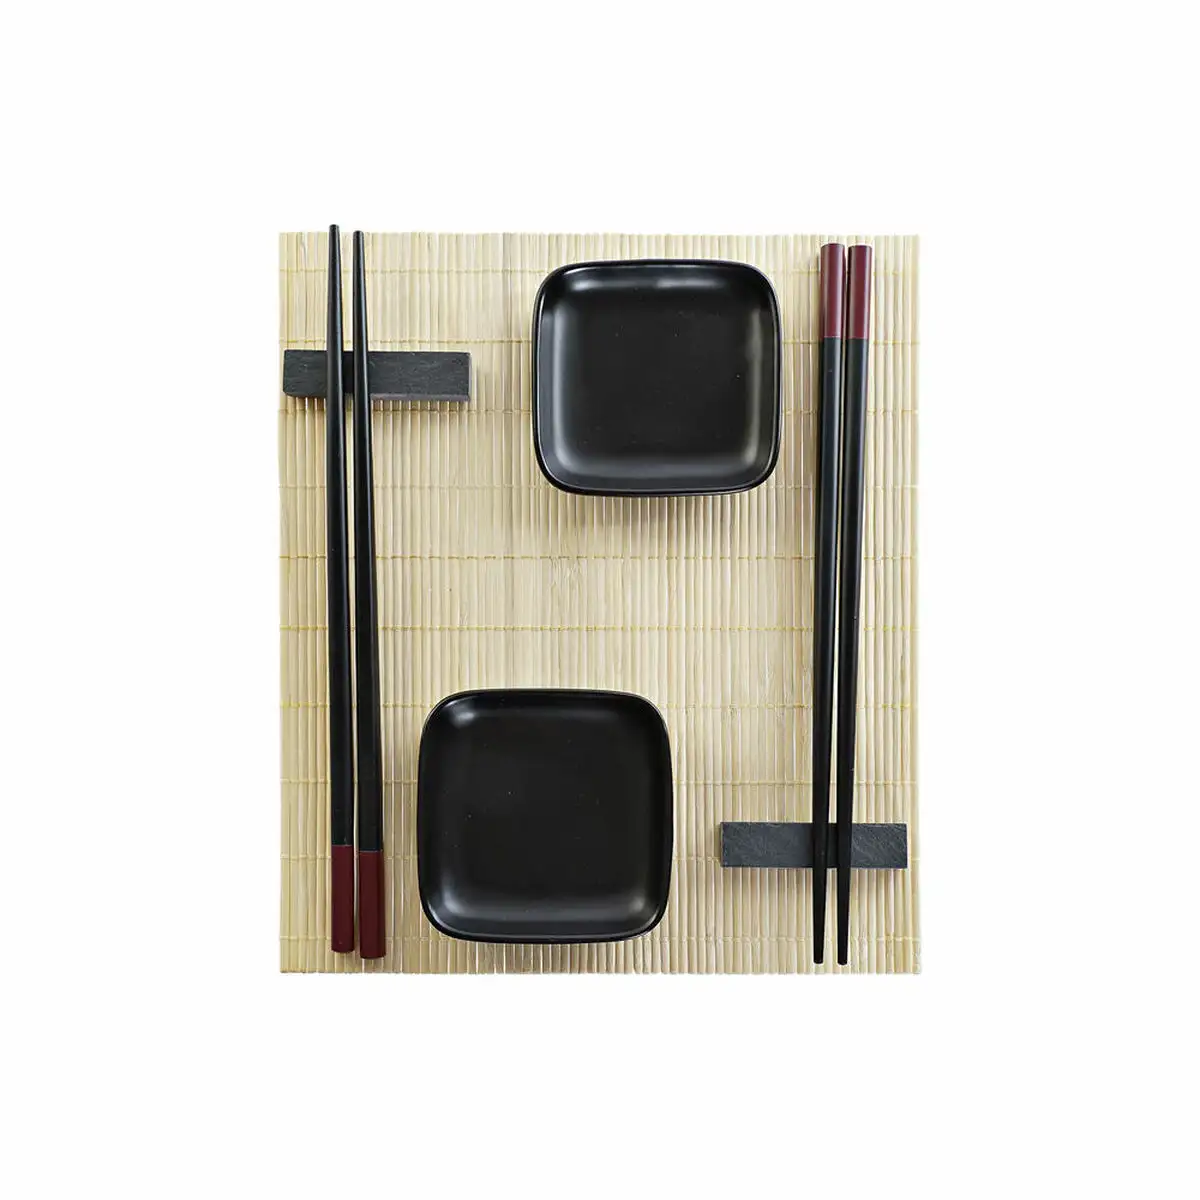 Set de sushi dkd home decor noir naturel metal bambou gres oriental 30 x 40 cm 27 8 x 17 8 x 3 cm 7 pieces 27 8 x 17 8 x 3 cm_6050. Bienvenue chez DIAYTAR SENEGAL - Où l'Authenticité Rencontre l'Accessibilité. Explorez notre sélection abordable et découvrez des articles qui incarnent l'essence du Sénégal.